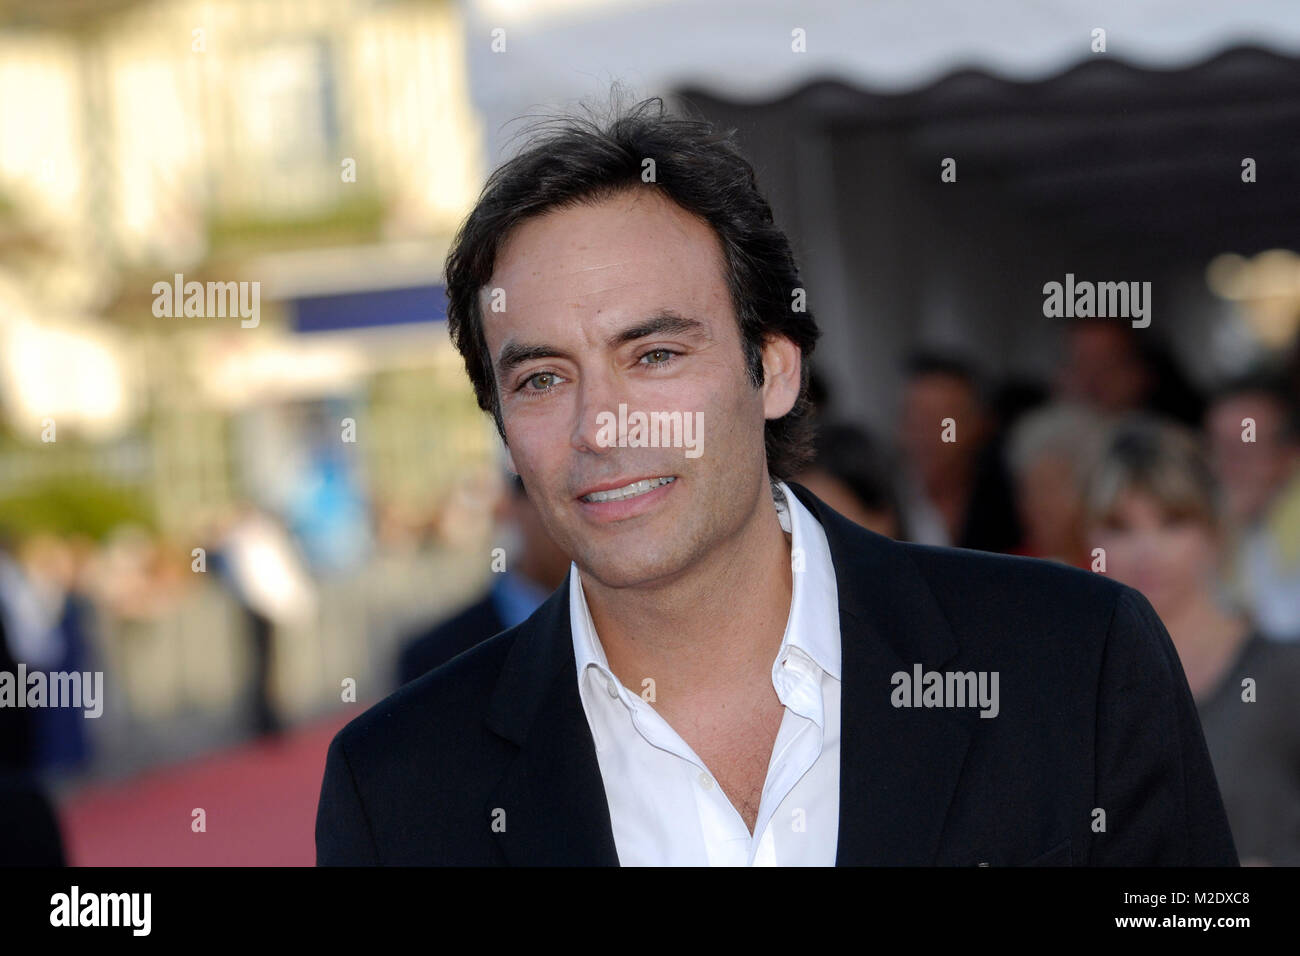 Anthony Delon (Sohn von Alain Delon) bei der Premiere von "Fair Game" im Rahmen des "Festival des amerikanischen Filmes" in Deauville/Frankreich am 09.09.2010 Stockfoto